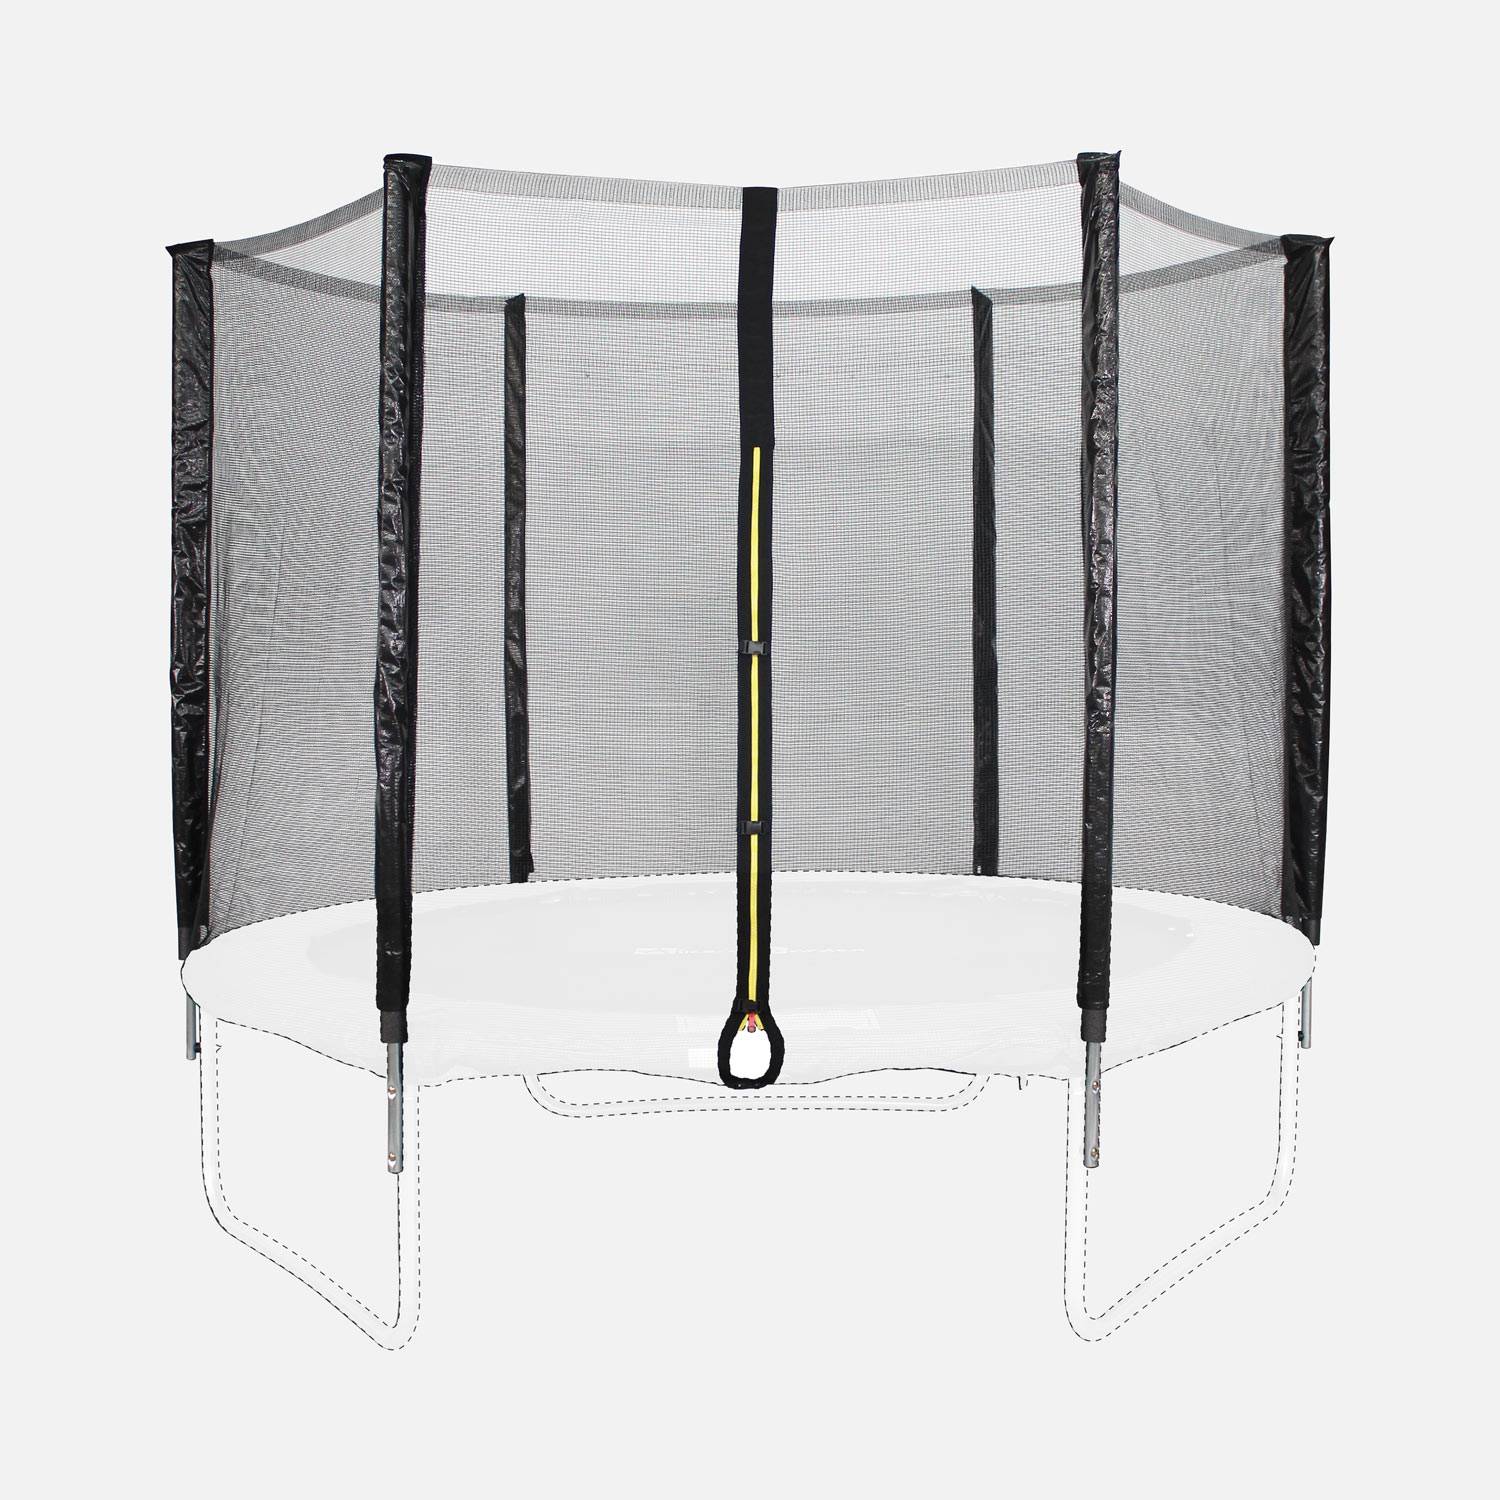 Kit de substituição da rede de proteção do trampolim, ANTARES EXTERIORES, para o trampolim Pluton Ø250cm,sweeek,Photo2